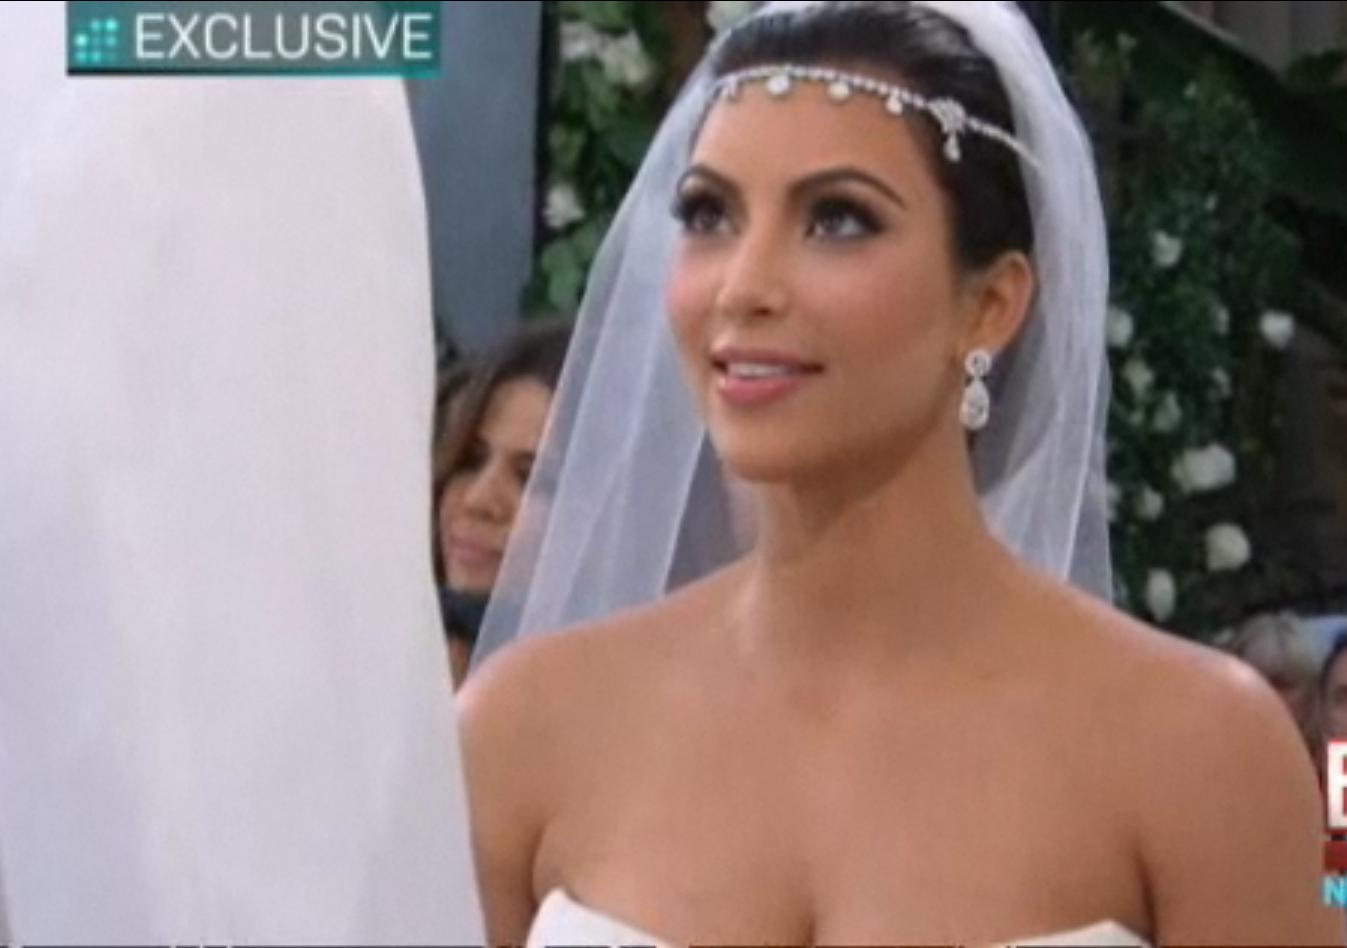 Kim Kardashian Wedding